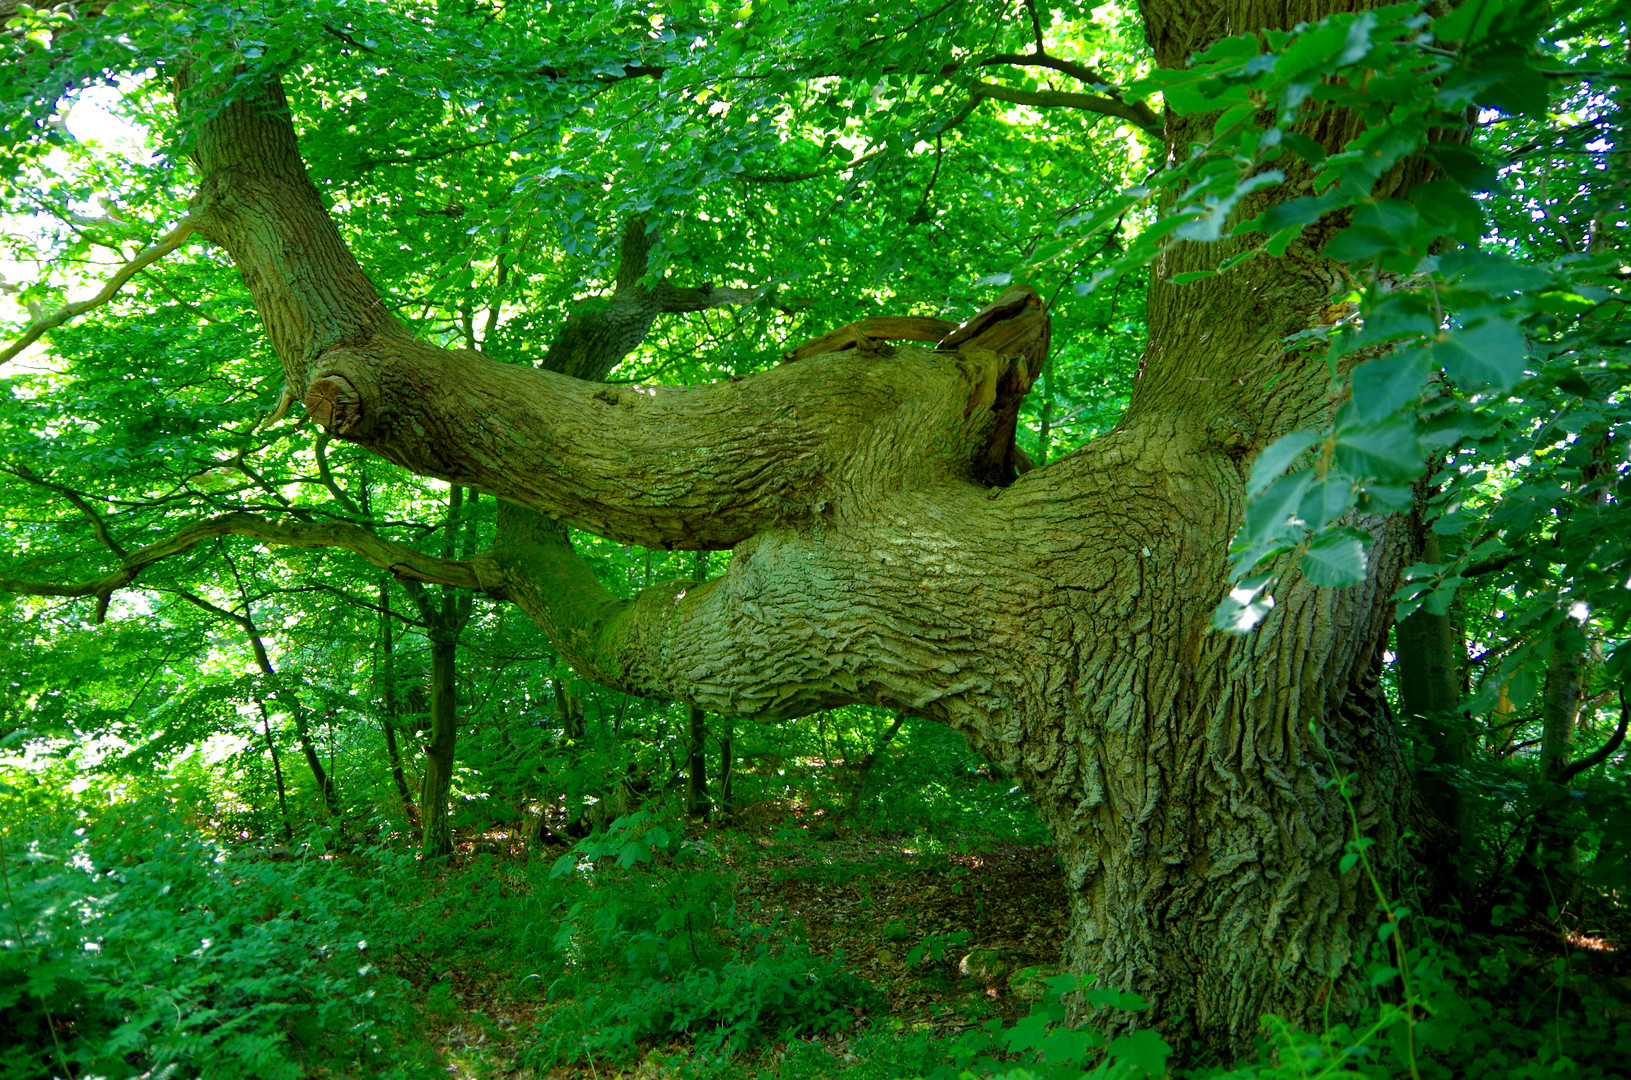 Eichenbaum auf der Insel Vilm in eigenwilliger Wuchsform